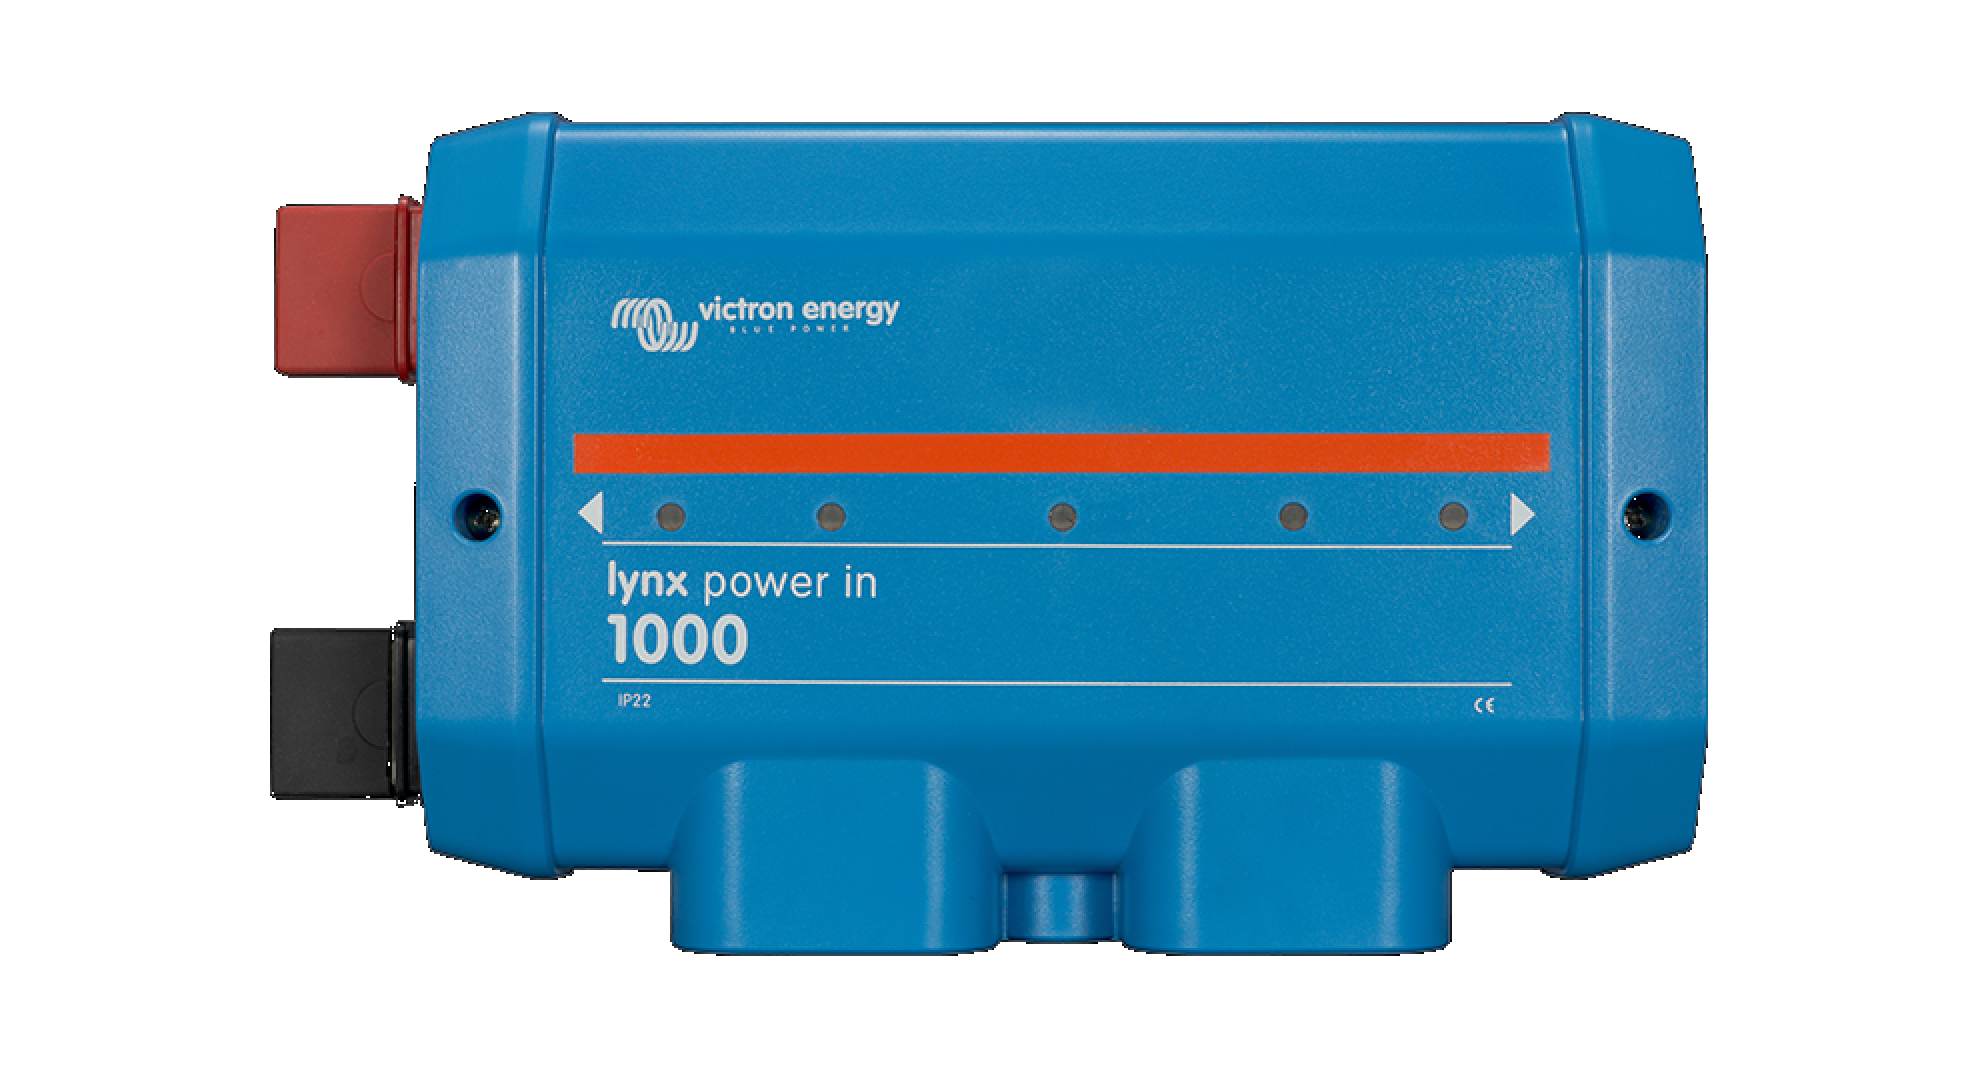 Module d'alimentation Lynx Power In est utilisé p